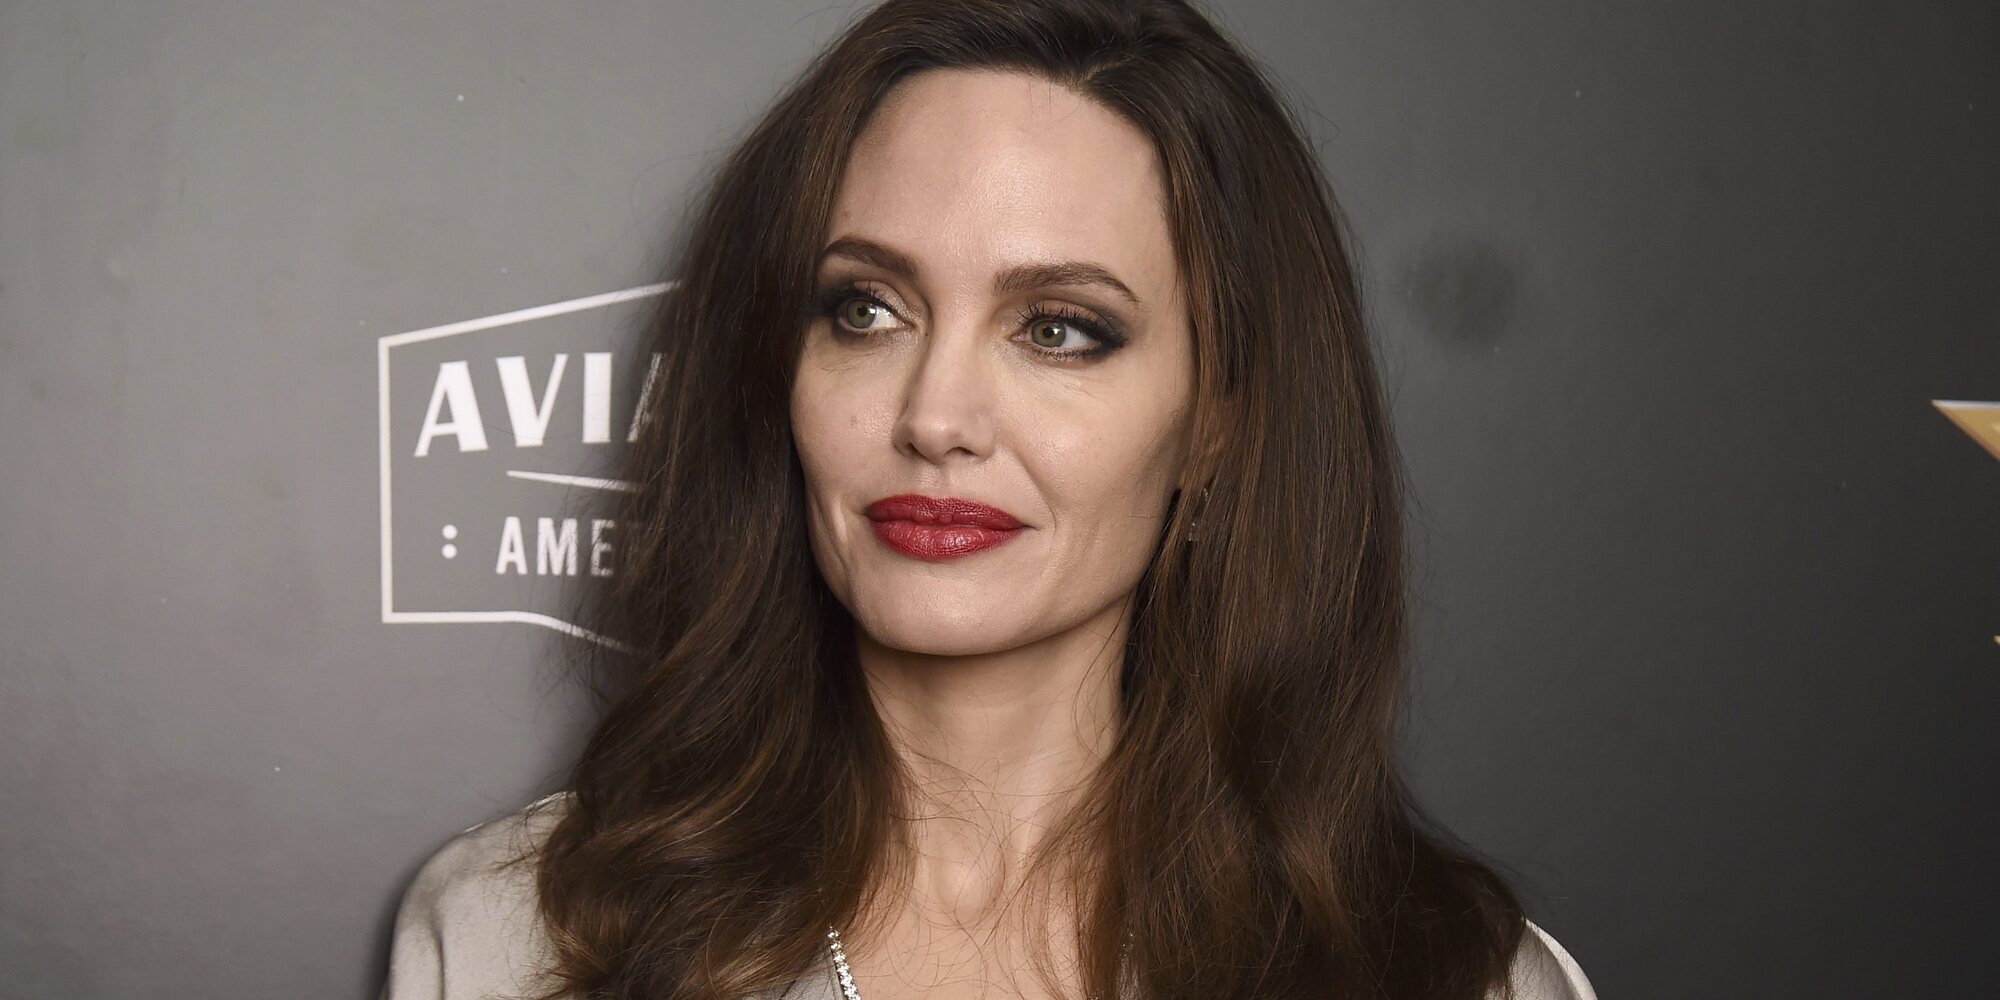 Angelina Jolie revela que ha sufrido violencia vicaria por parte de Brad Pitt: "Quiero recuperar mi seguridad"